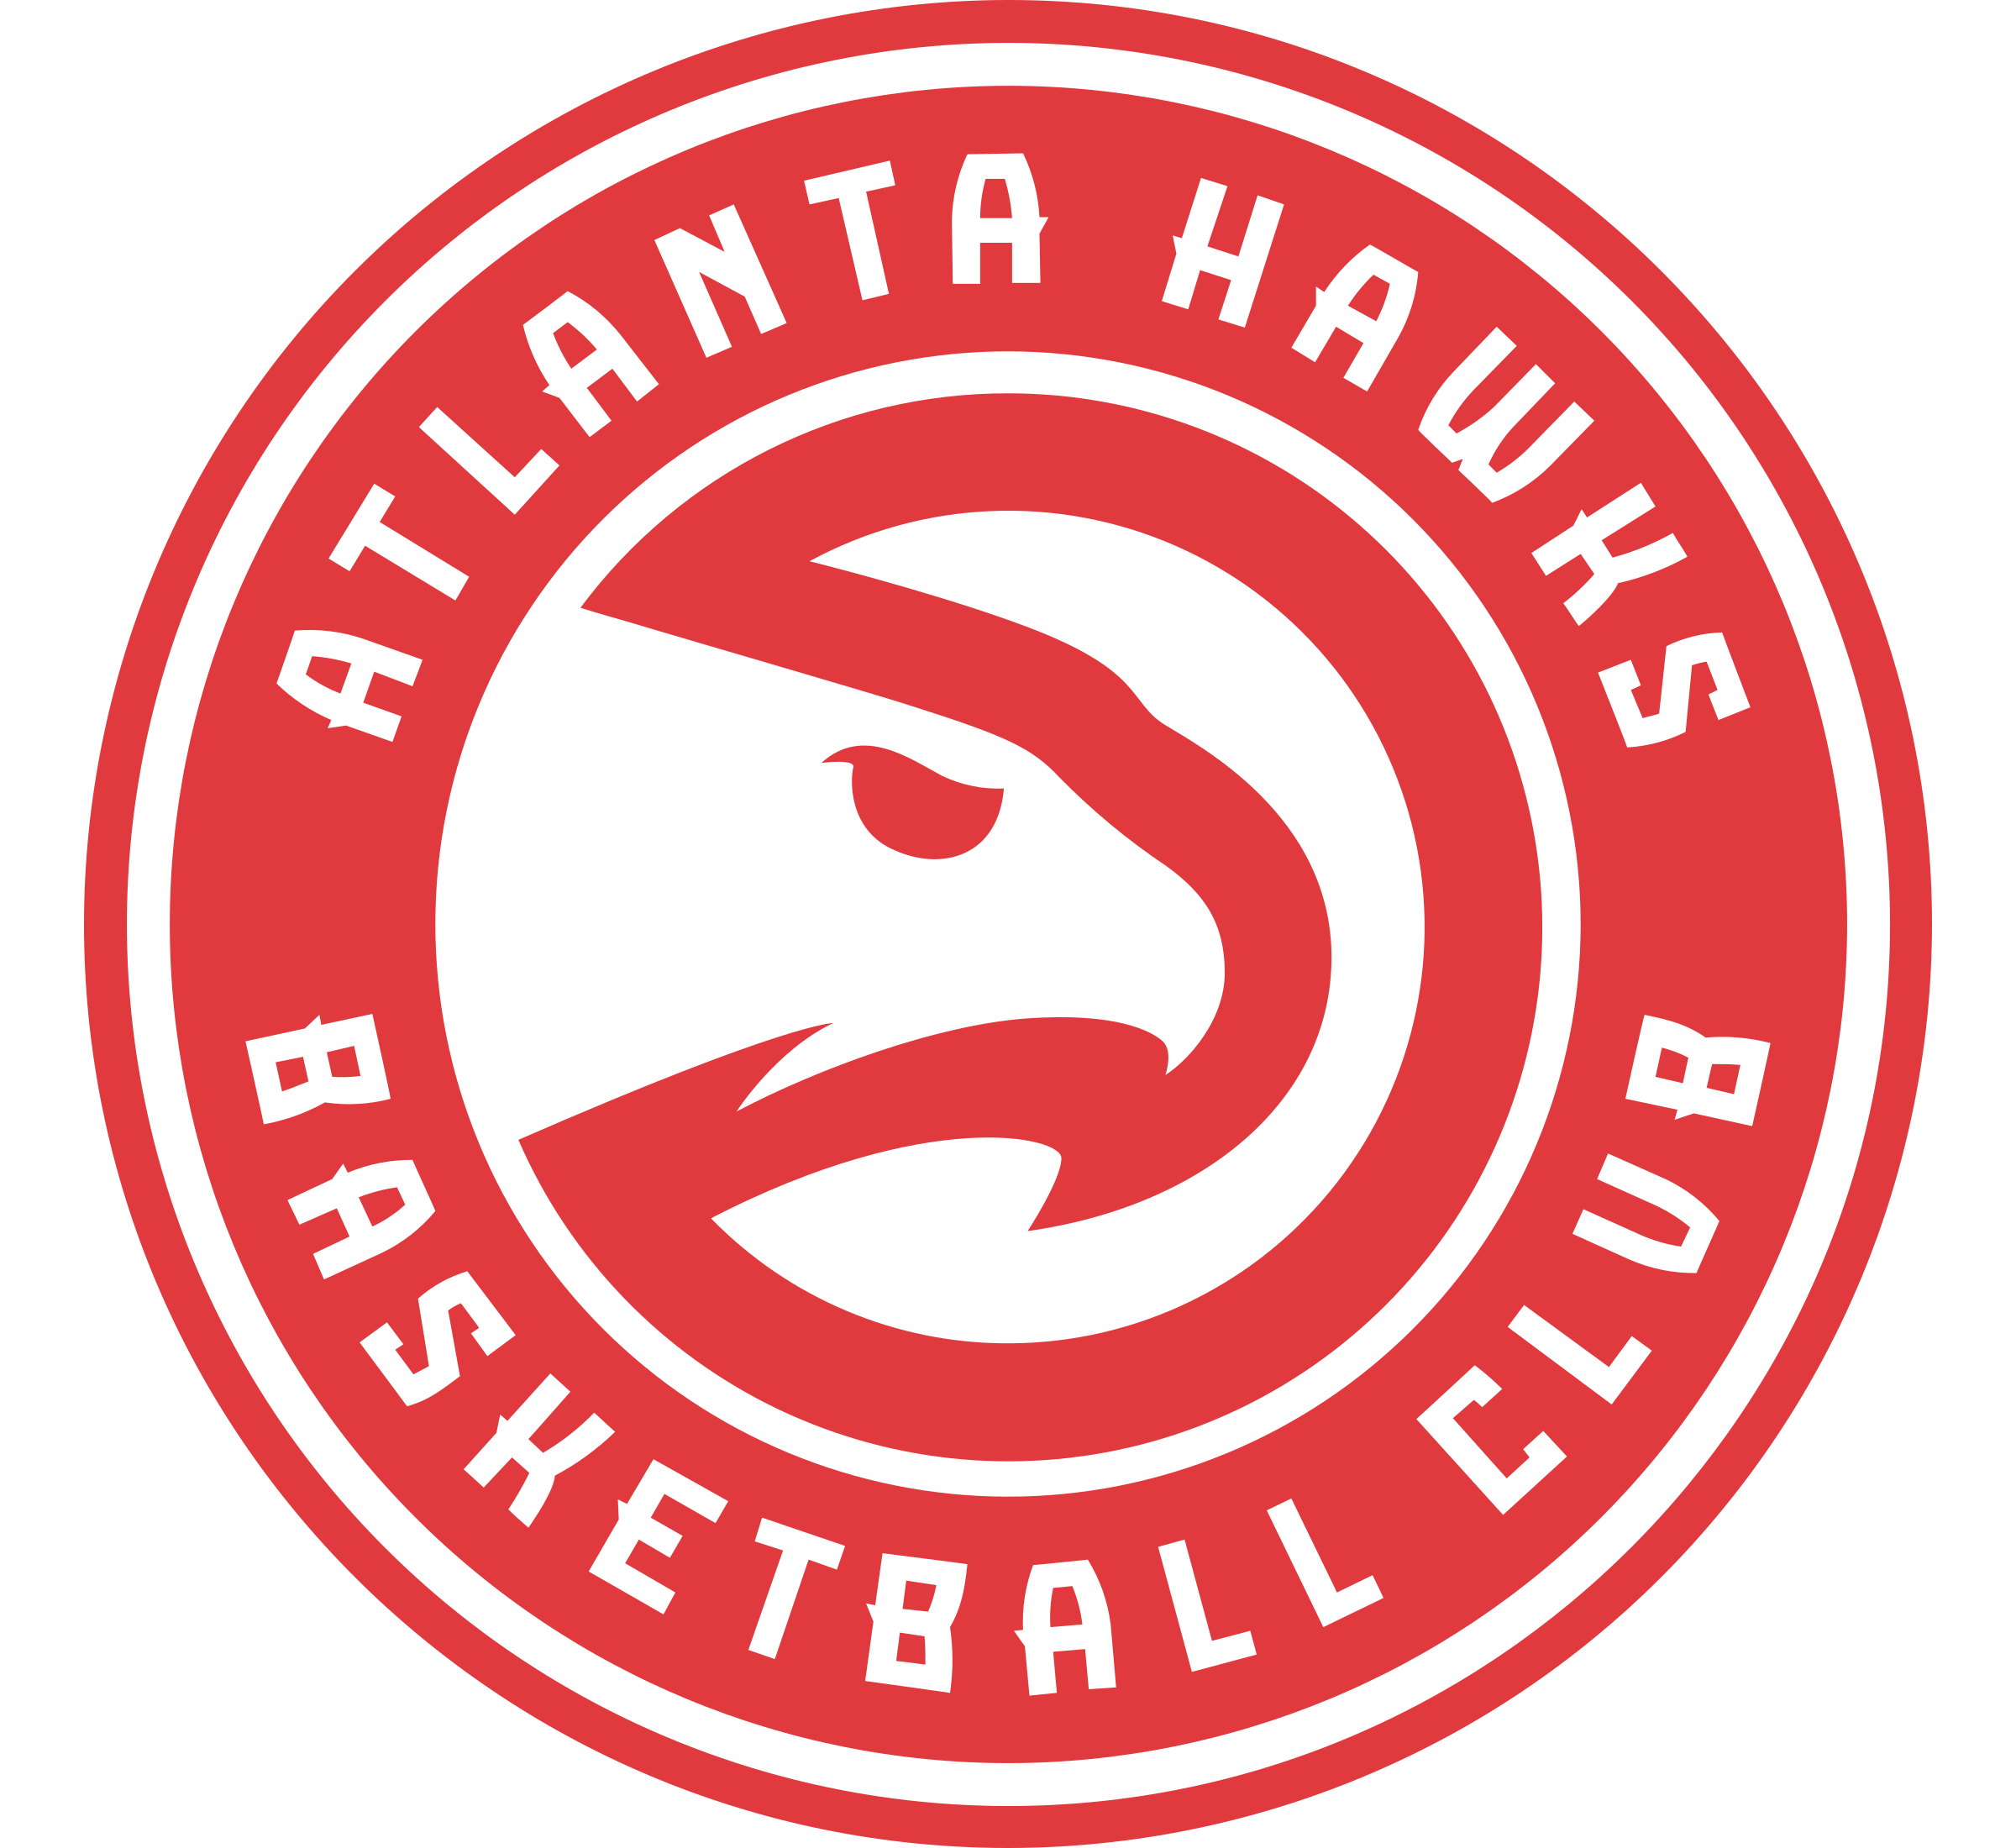 Atlanta Hawks PNG